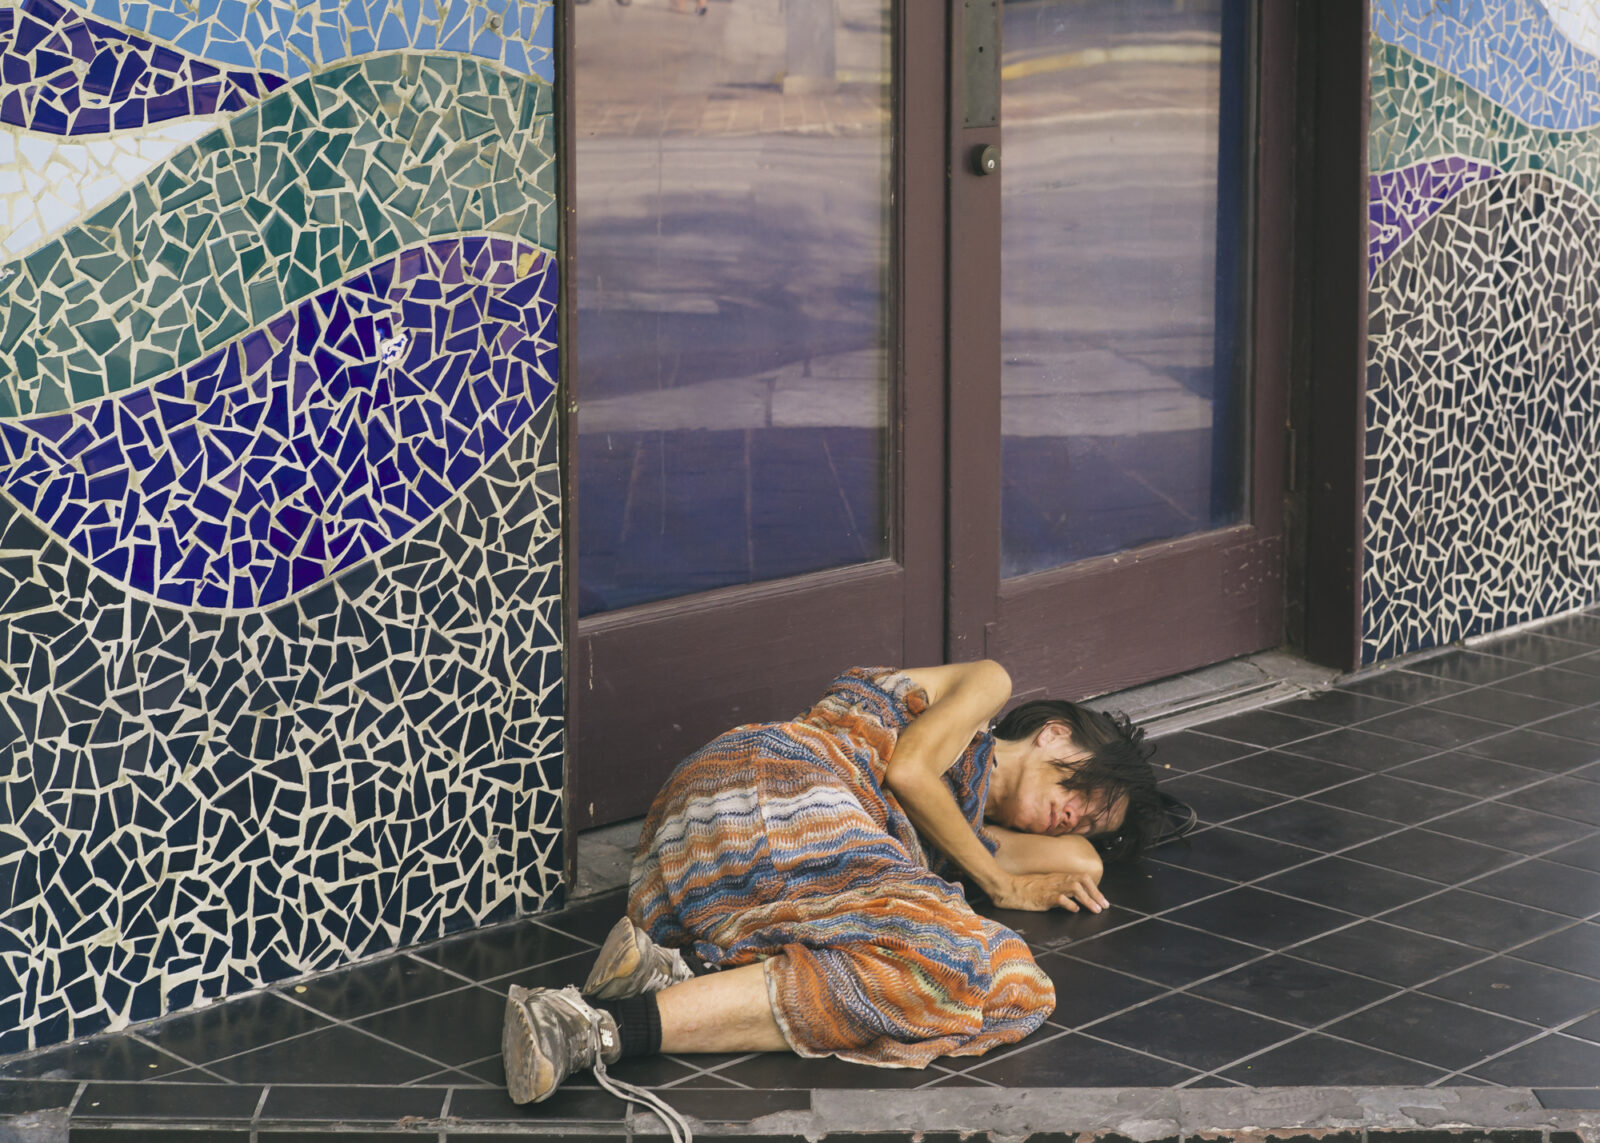 A homeless woman in Austin, Texas